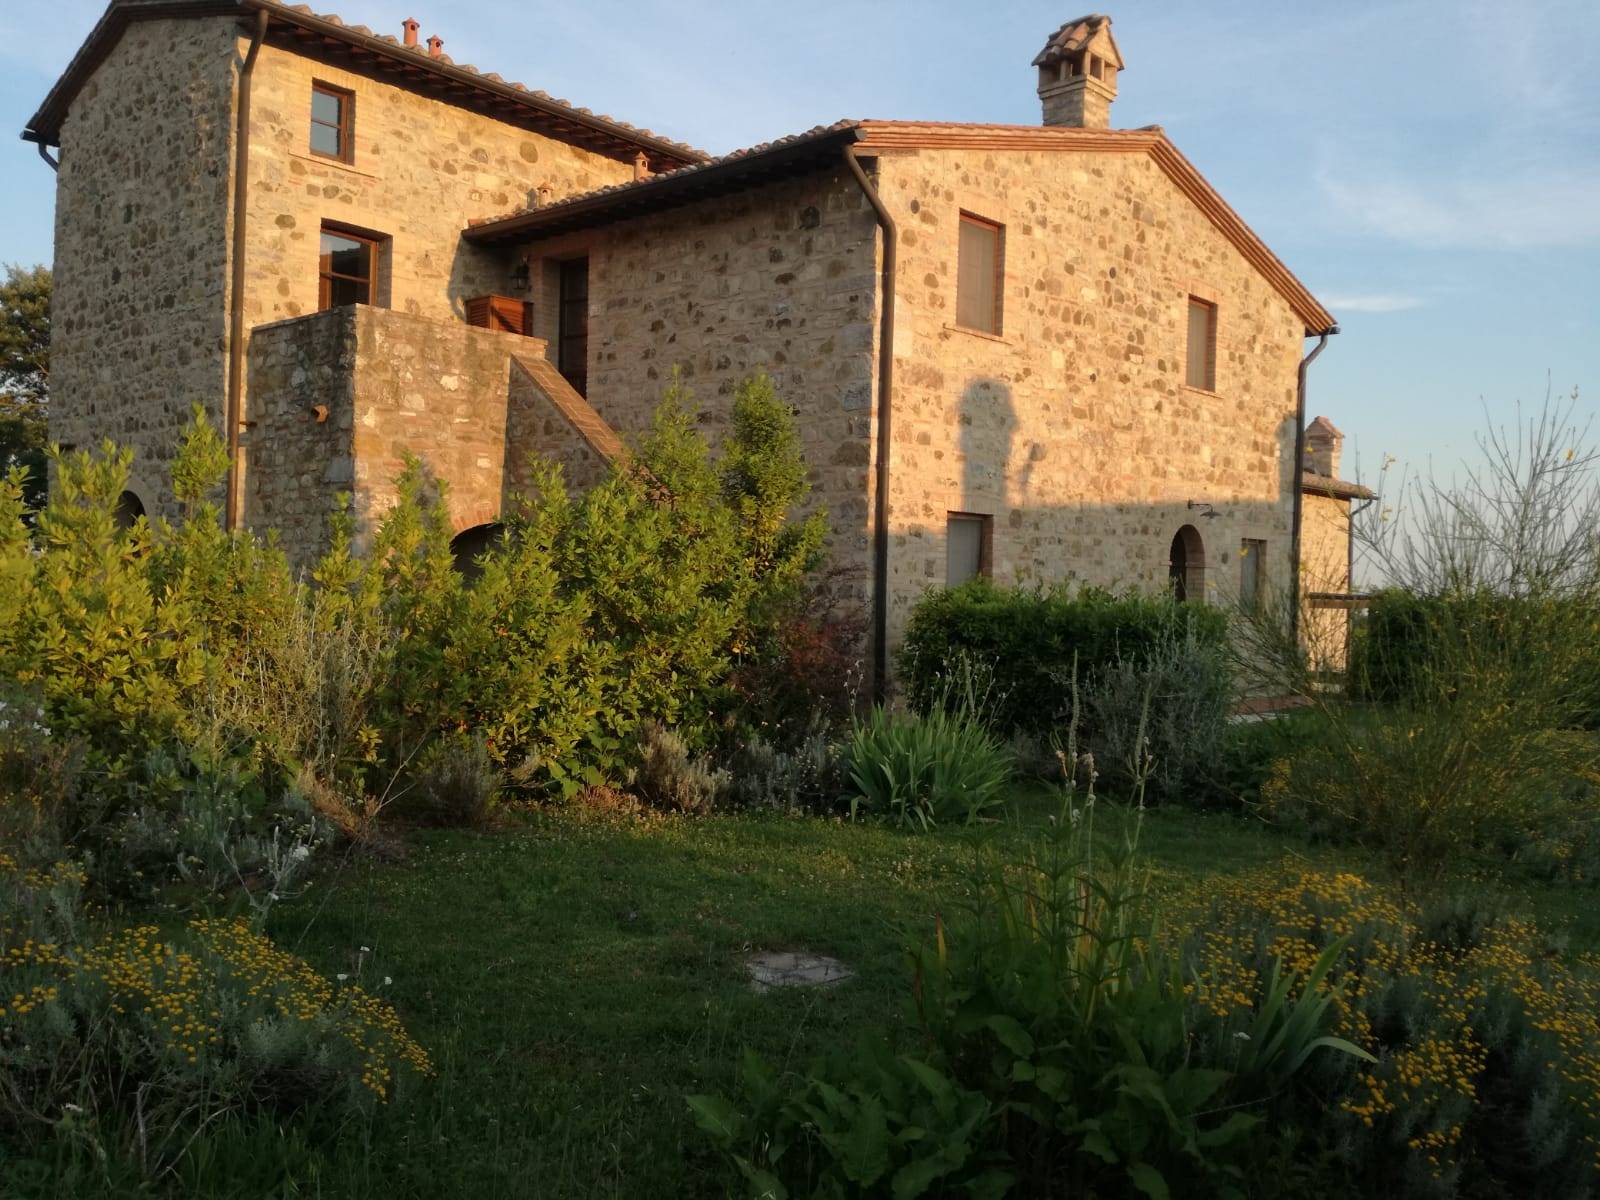 Rustico / Casale in affitto a Roccalbegna, 3 locali, zona Zona: Triana, prezzo € 3.400 | CambioCasa.it